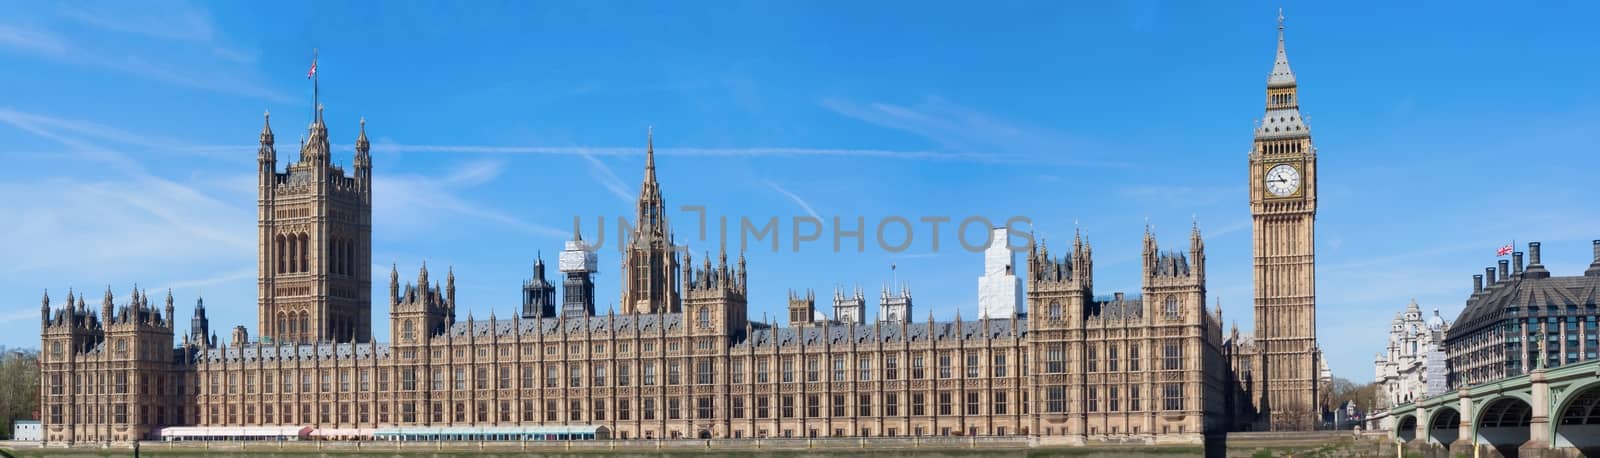 Big ben and parliament, London, panorama